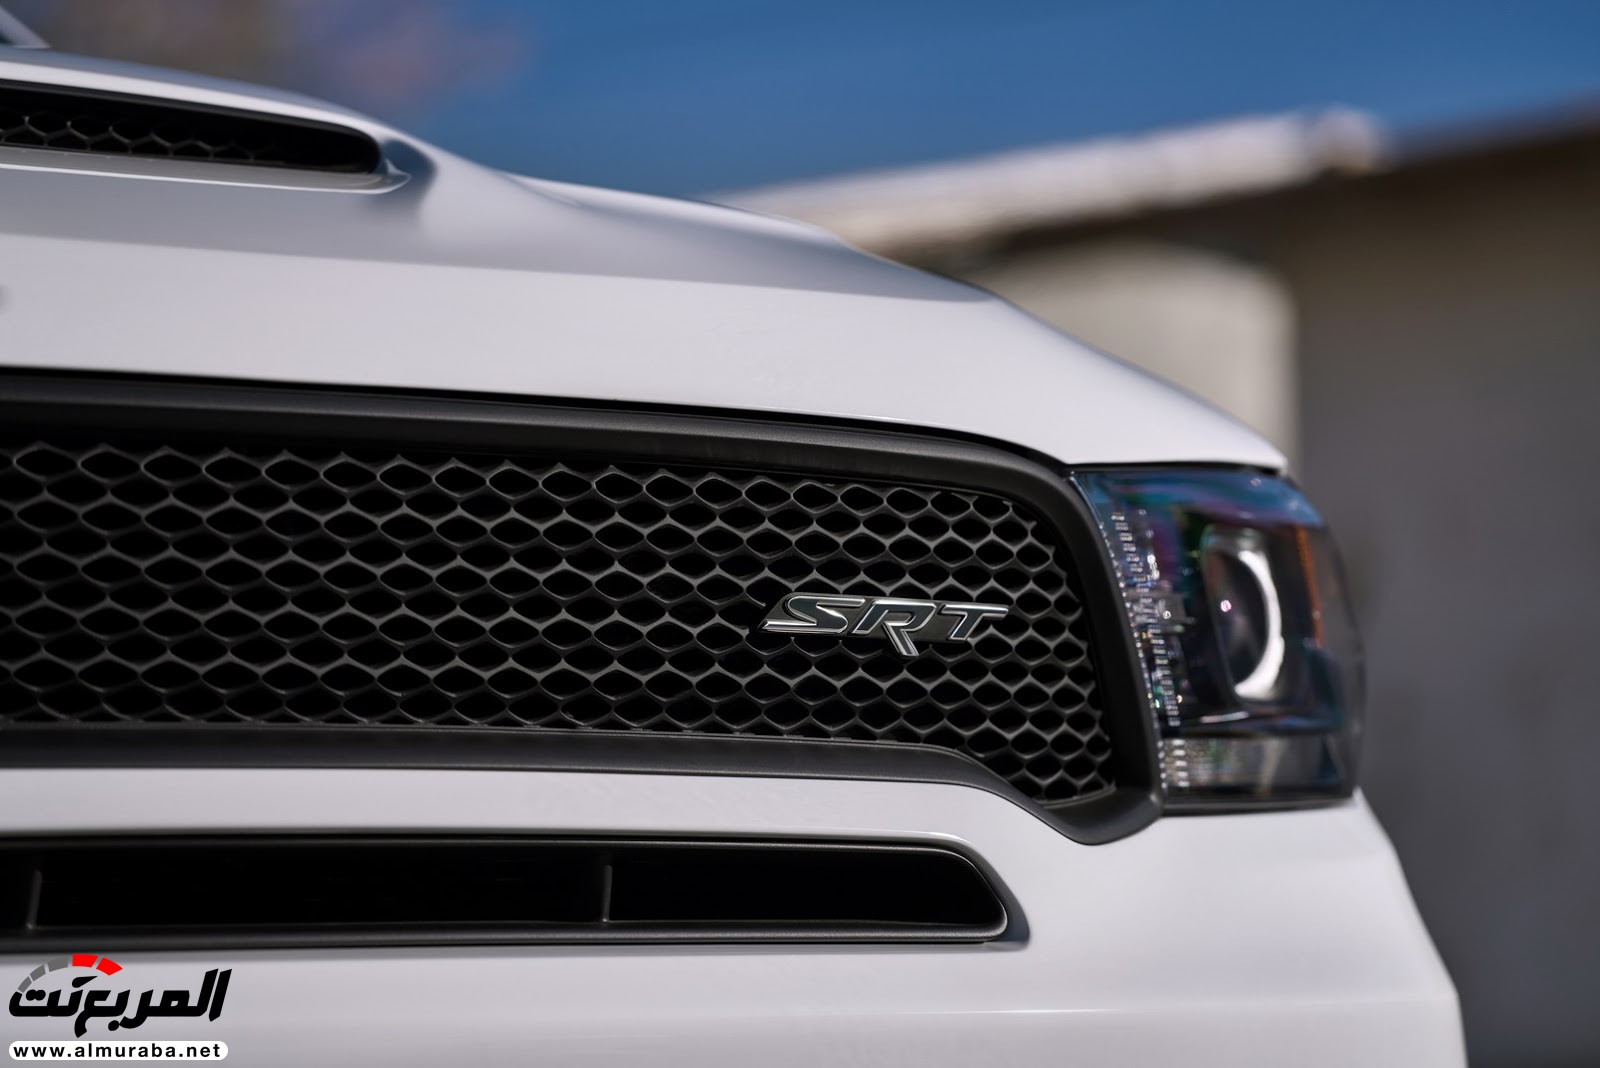 "دودج" دورانجو إس آر تي الجديدة كليا 2018 يكشف عنها بمحرك 475 حصان Dodge Durango SRT 166